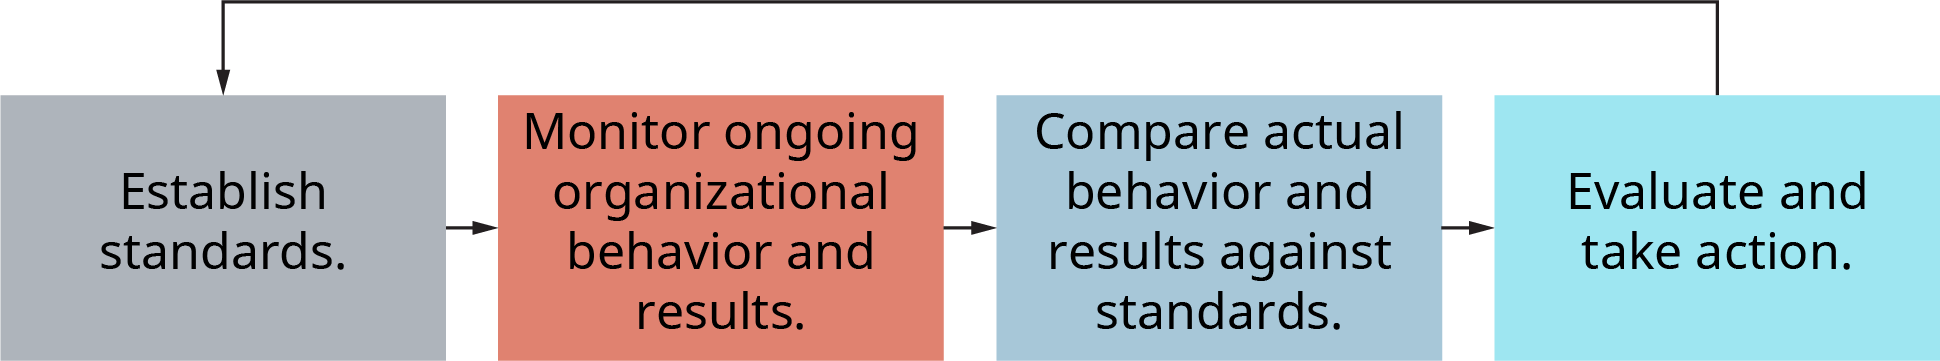 Un diagramme illustre le modèle de contrôle traditionnel en quatre étapes.